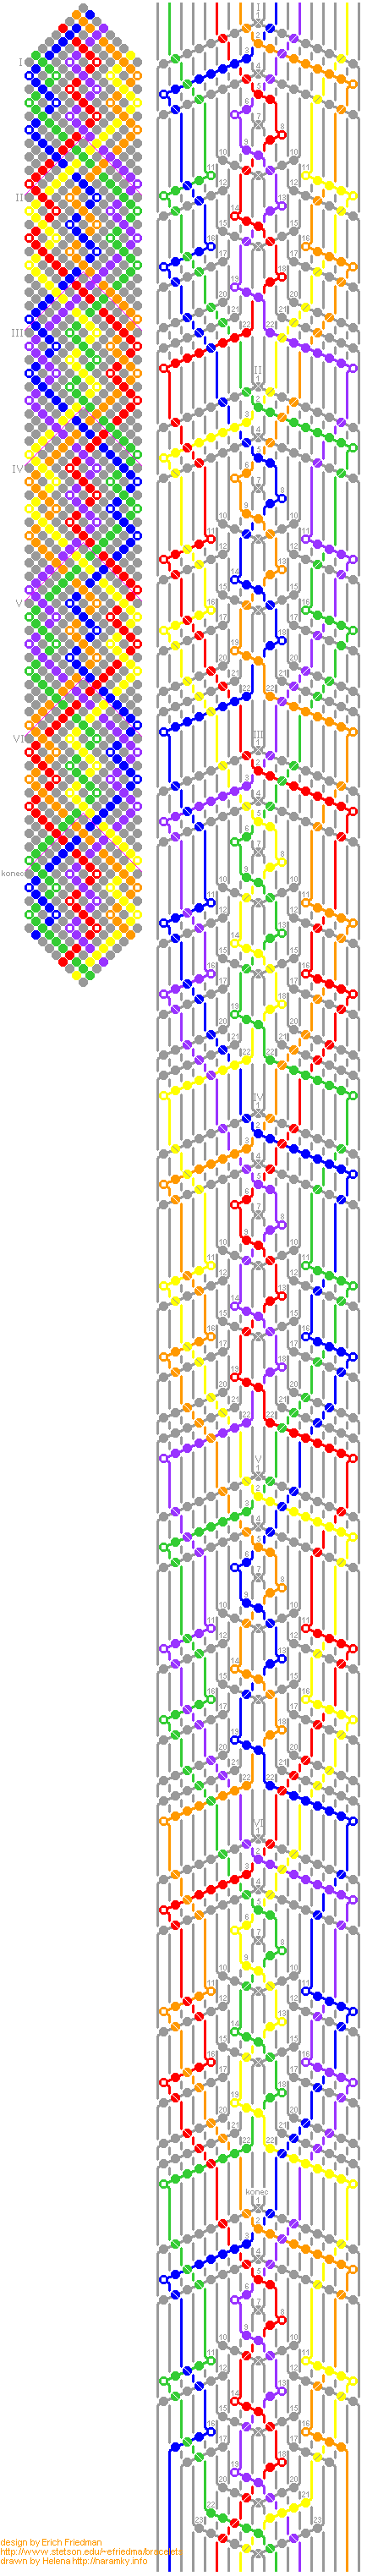 Náramek Colorweave 1, step-by-step (číslovaný) návod